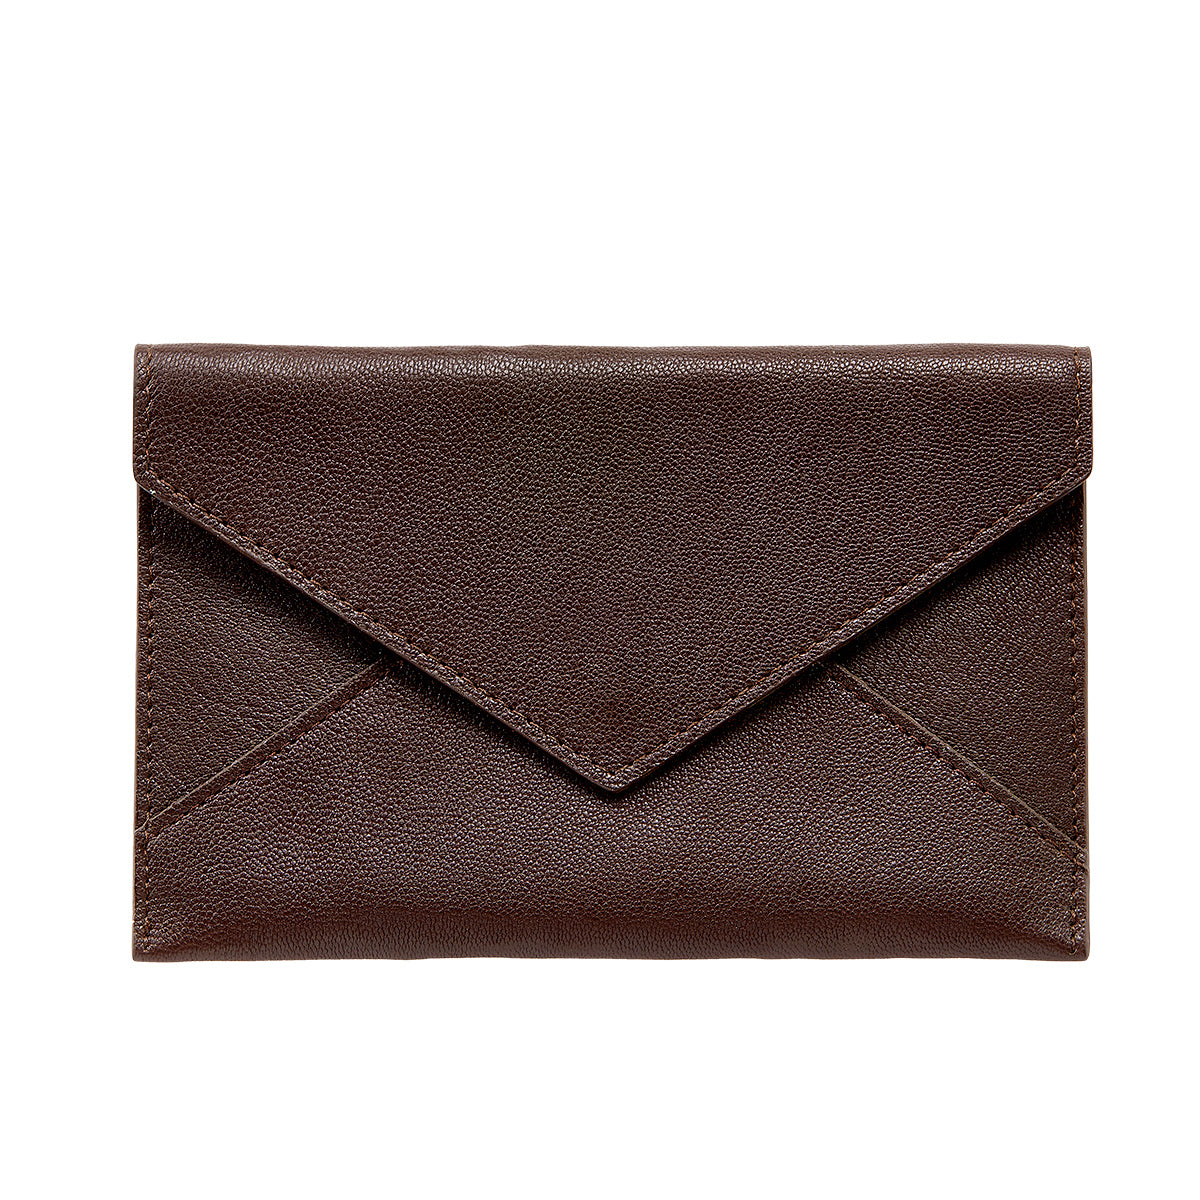 Graphic Image Medium Envelope Mocha Goatskin Leather